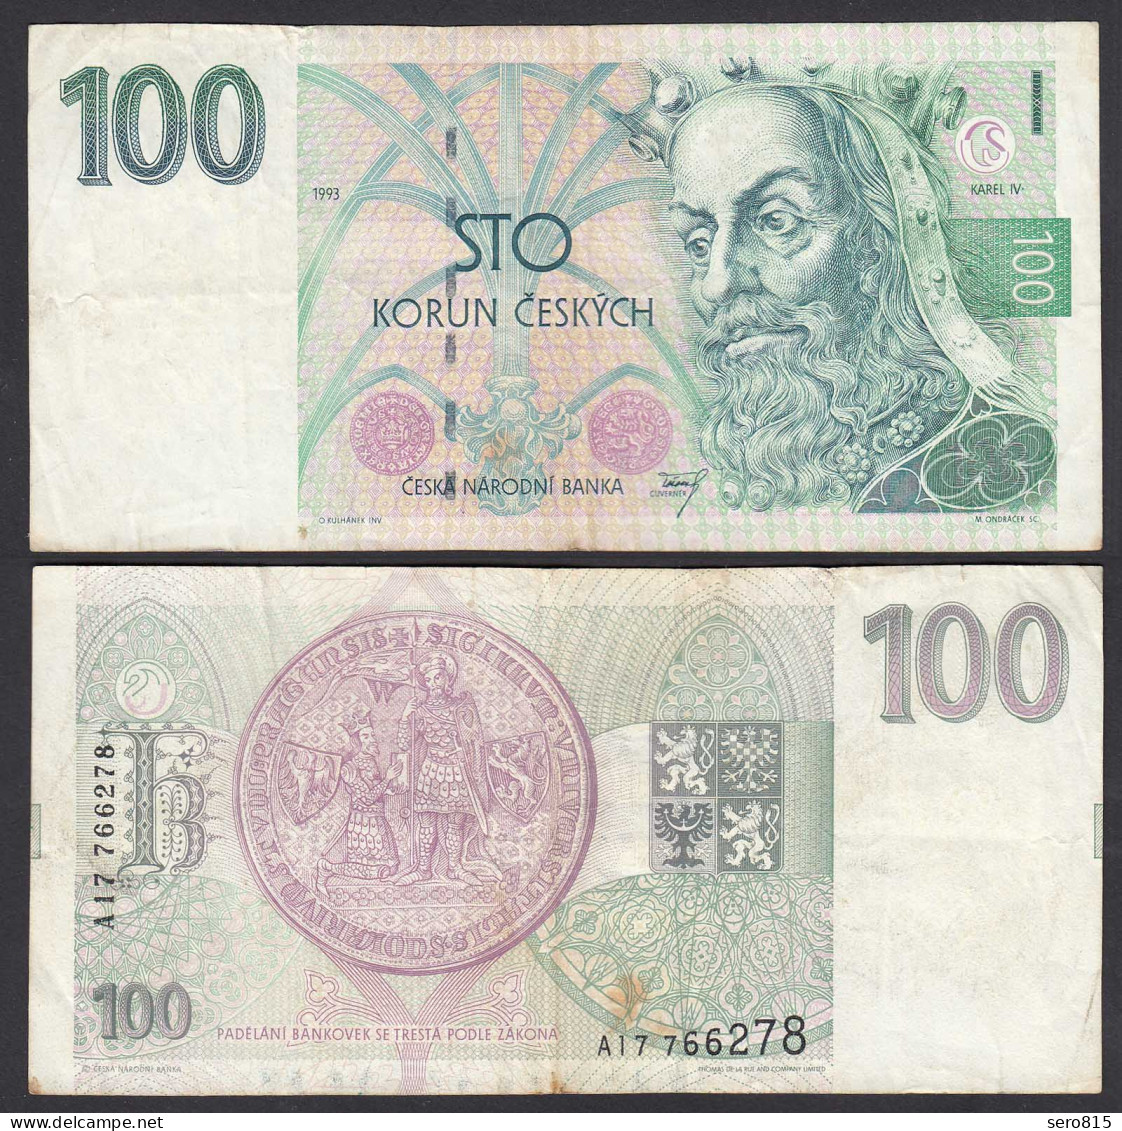 TSCHECHISCHE REPUBLIK - CZECH REPUBLIC 100 Korun 1993 F/VF (3/4) Pick 5a  (27606 - República Checa